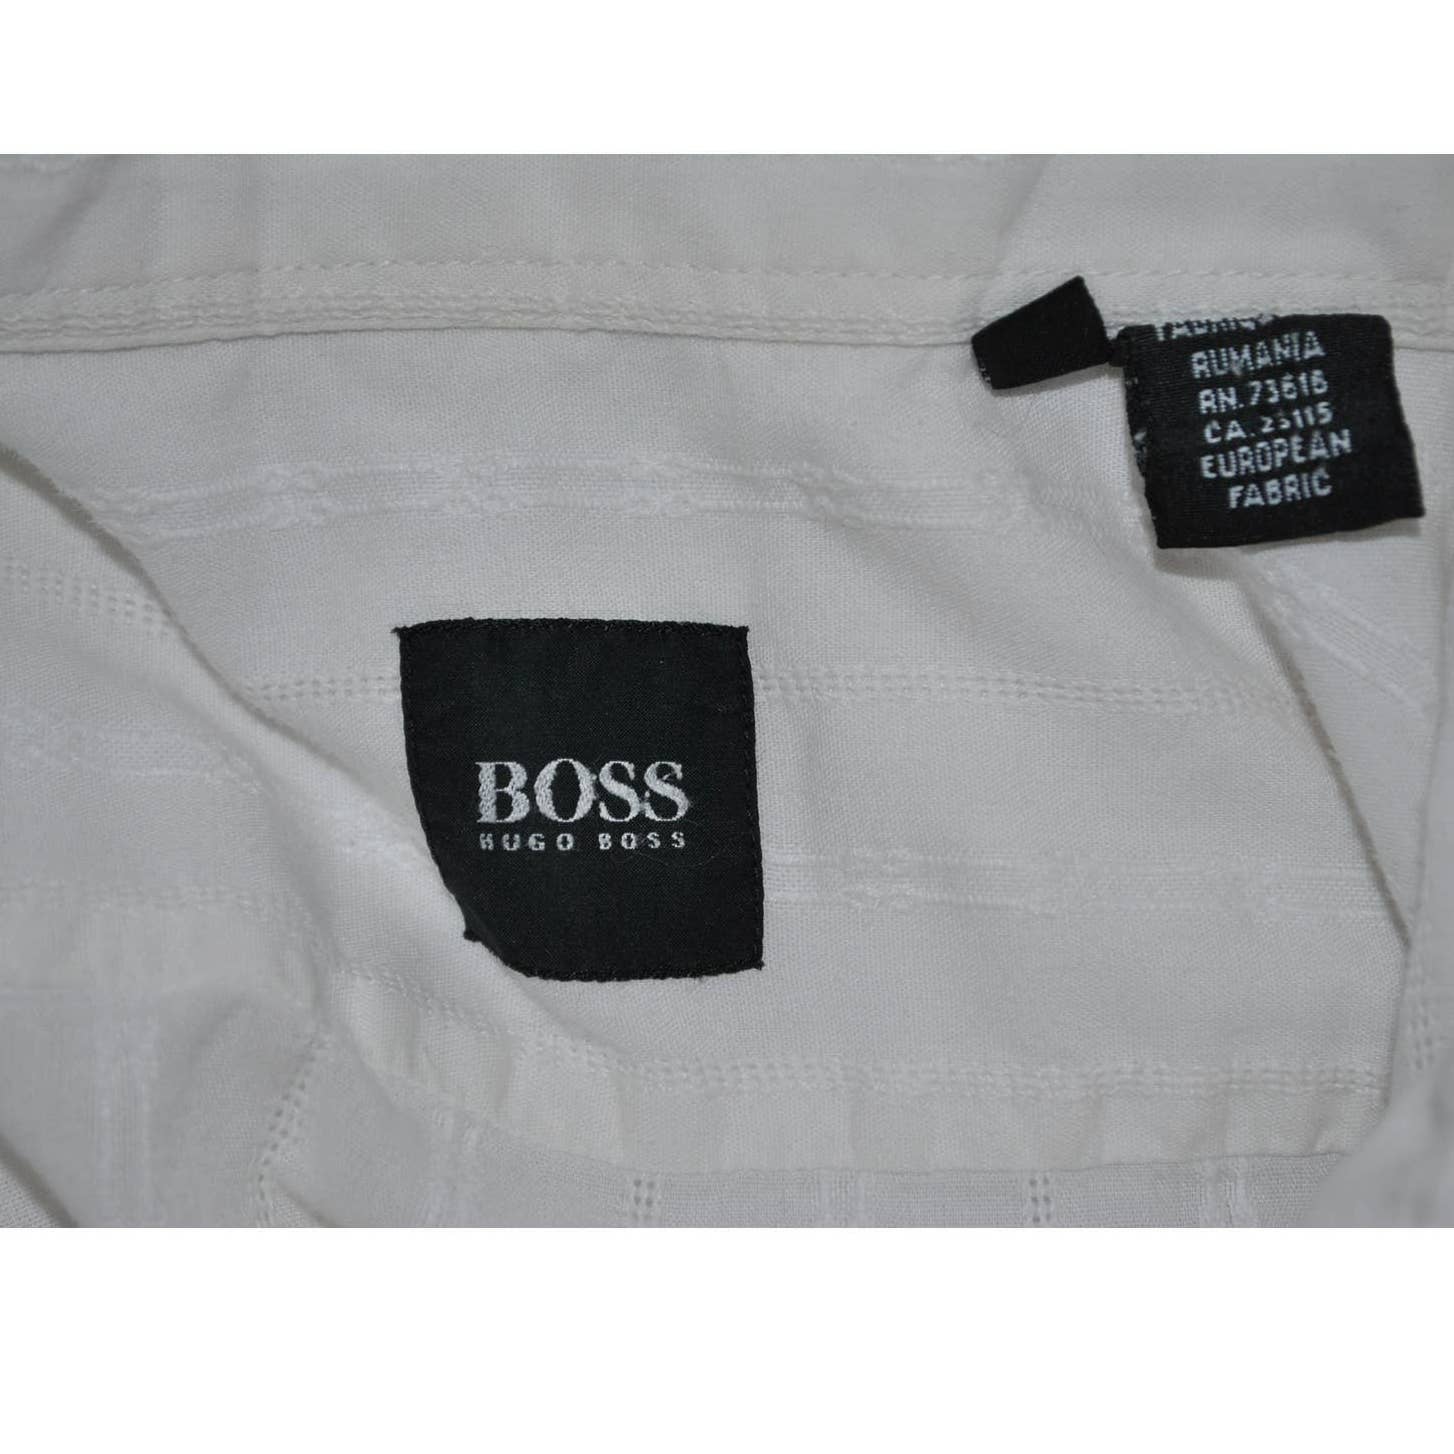 BOSS Hugo Boss White on White Embossed Striped Shirt - XL